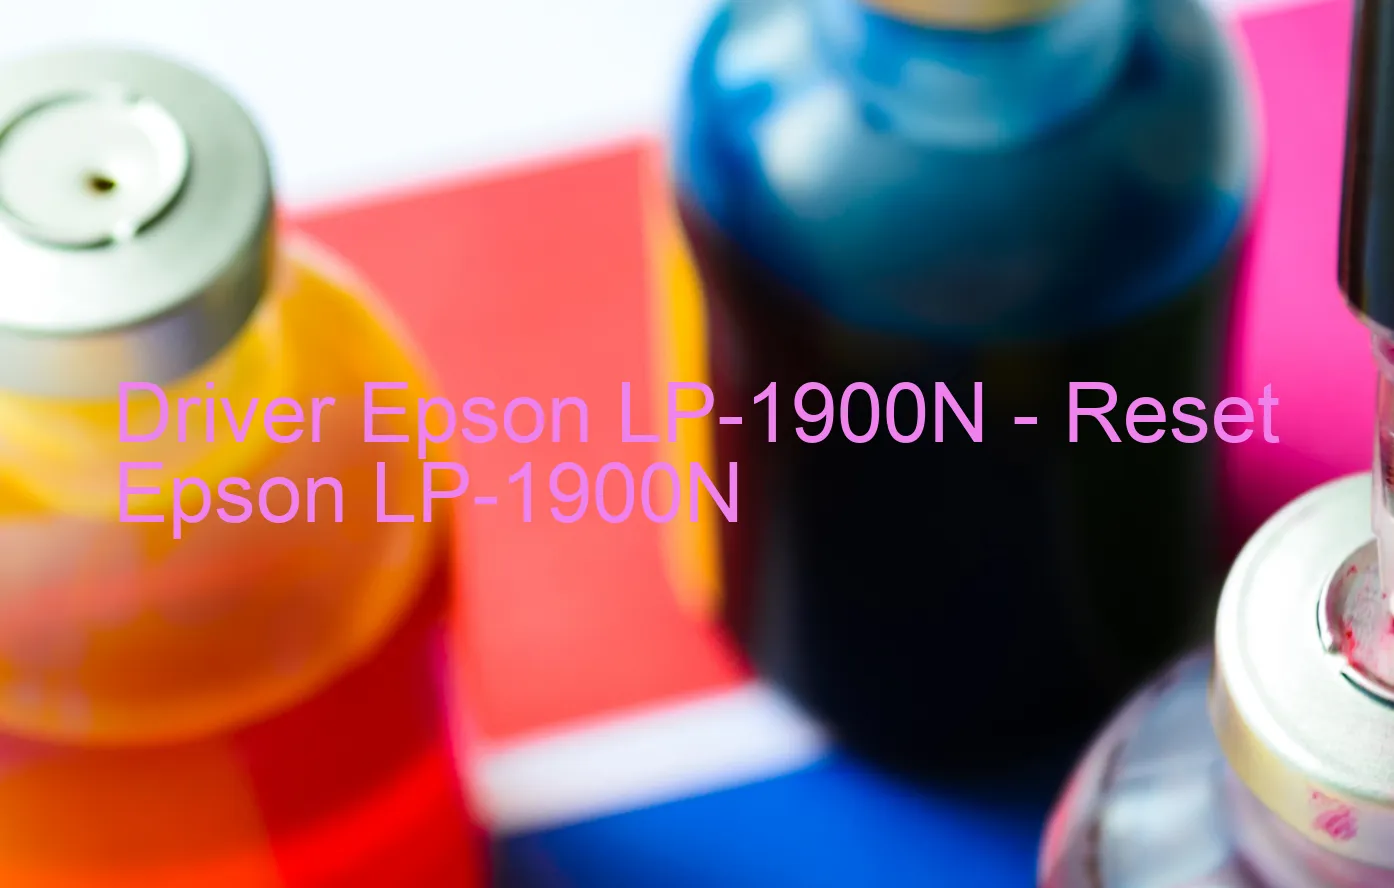 Epson LP-1900Nのドライバー、Epson LP-1900Nのリセットソフトウェア